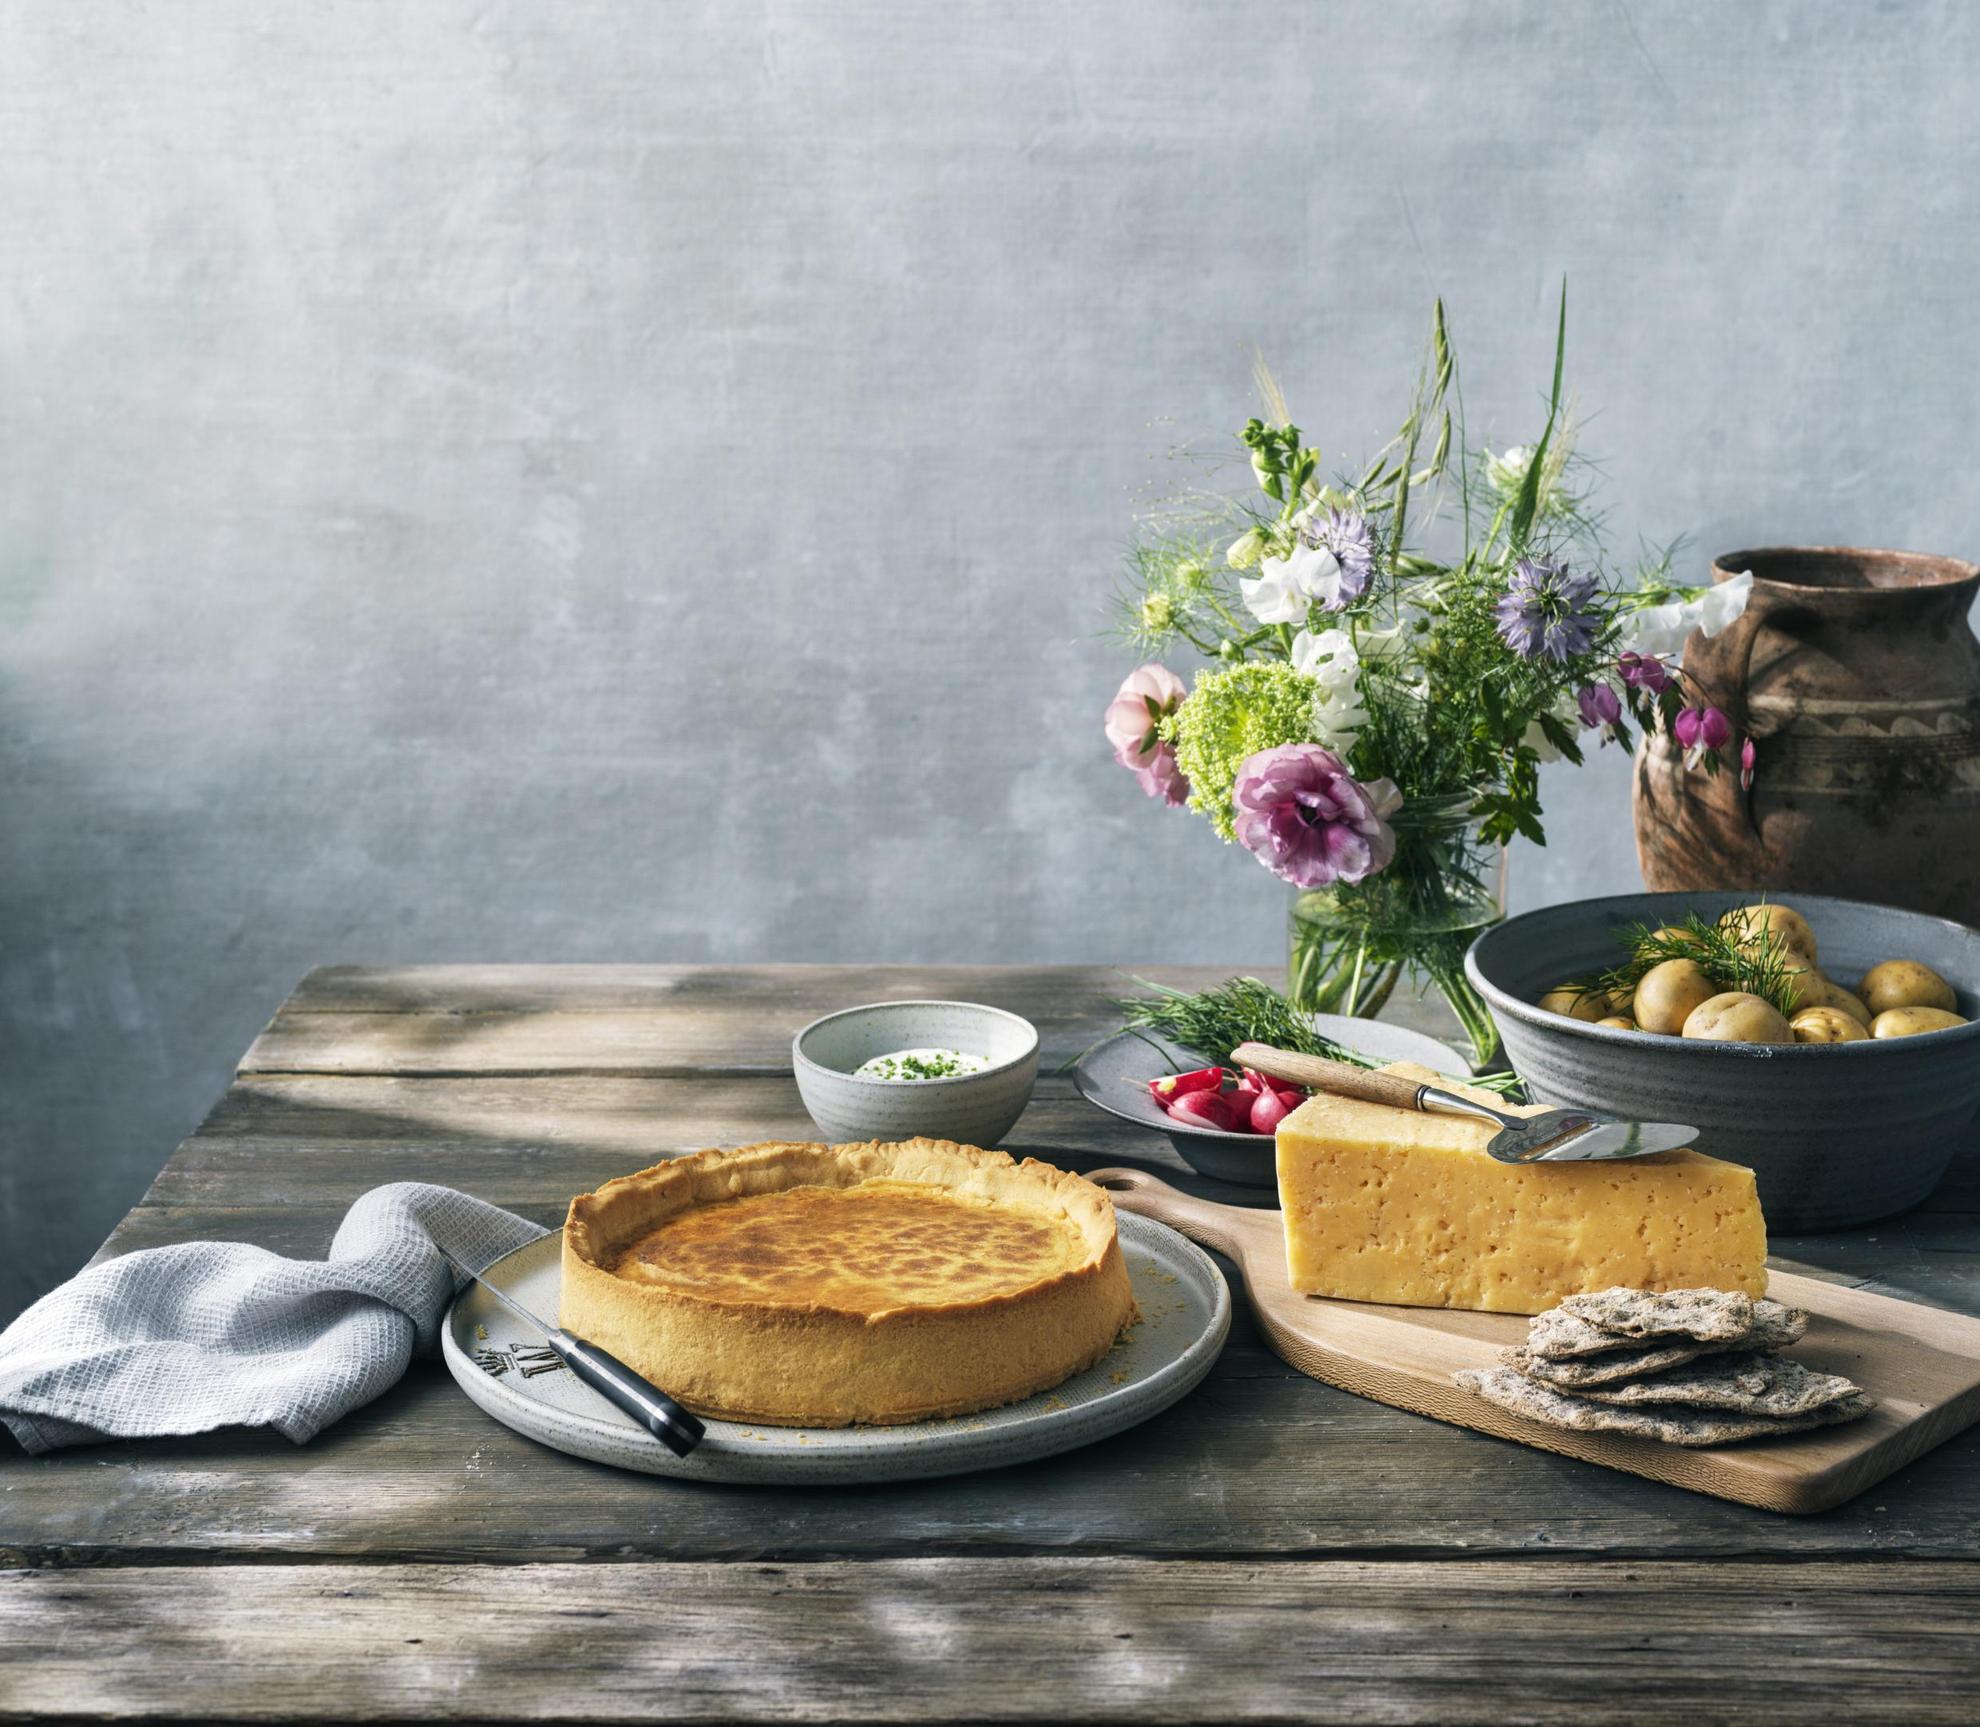 Une table en bois avec une tarte Västerbottenpaj, du fromage Västerbotten, un bol de pommes de terre et un vase de fleurs.